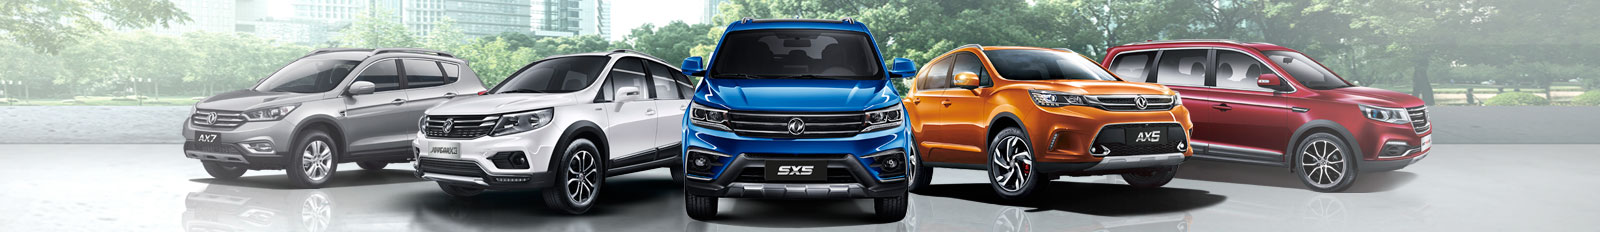 Modelos y Precios SUV Chinas Dongfeng